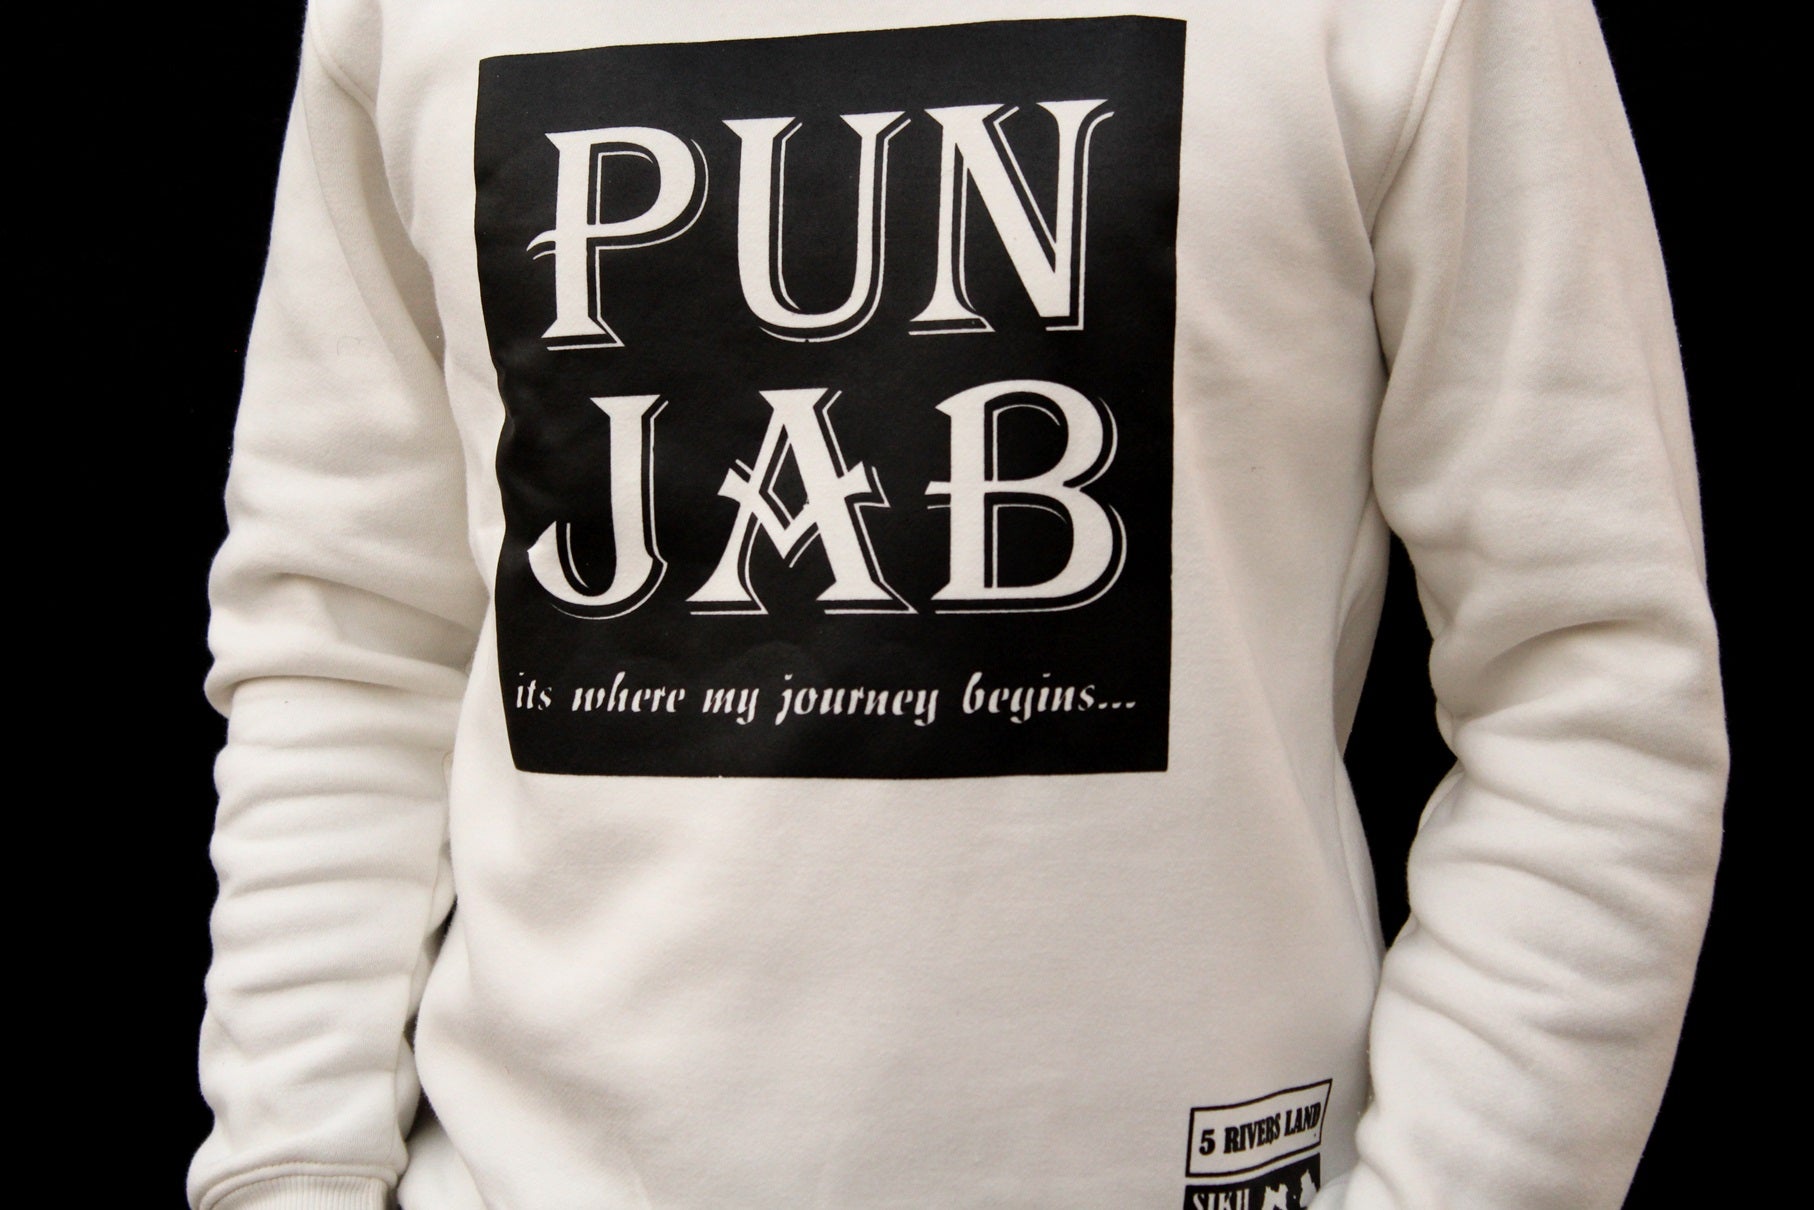 Punjab Sweatshirt